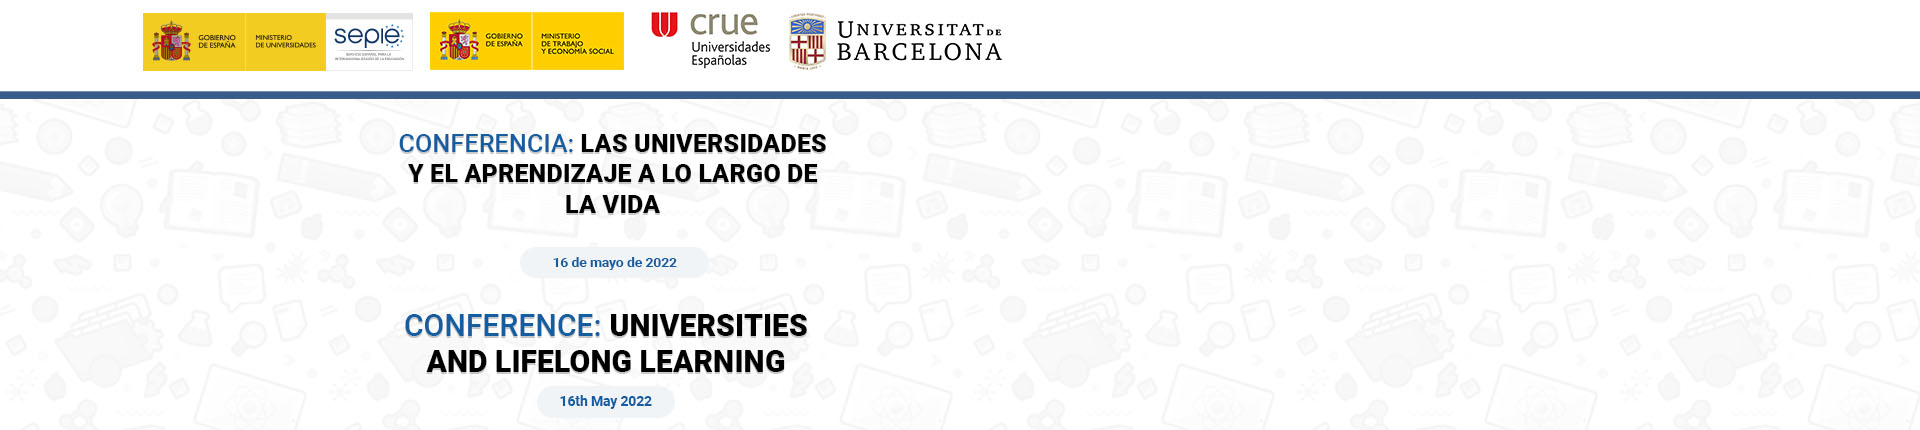 Conferencia: Las universidades y el aprendizaje a lo largo de la vida